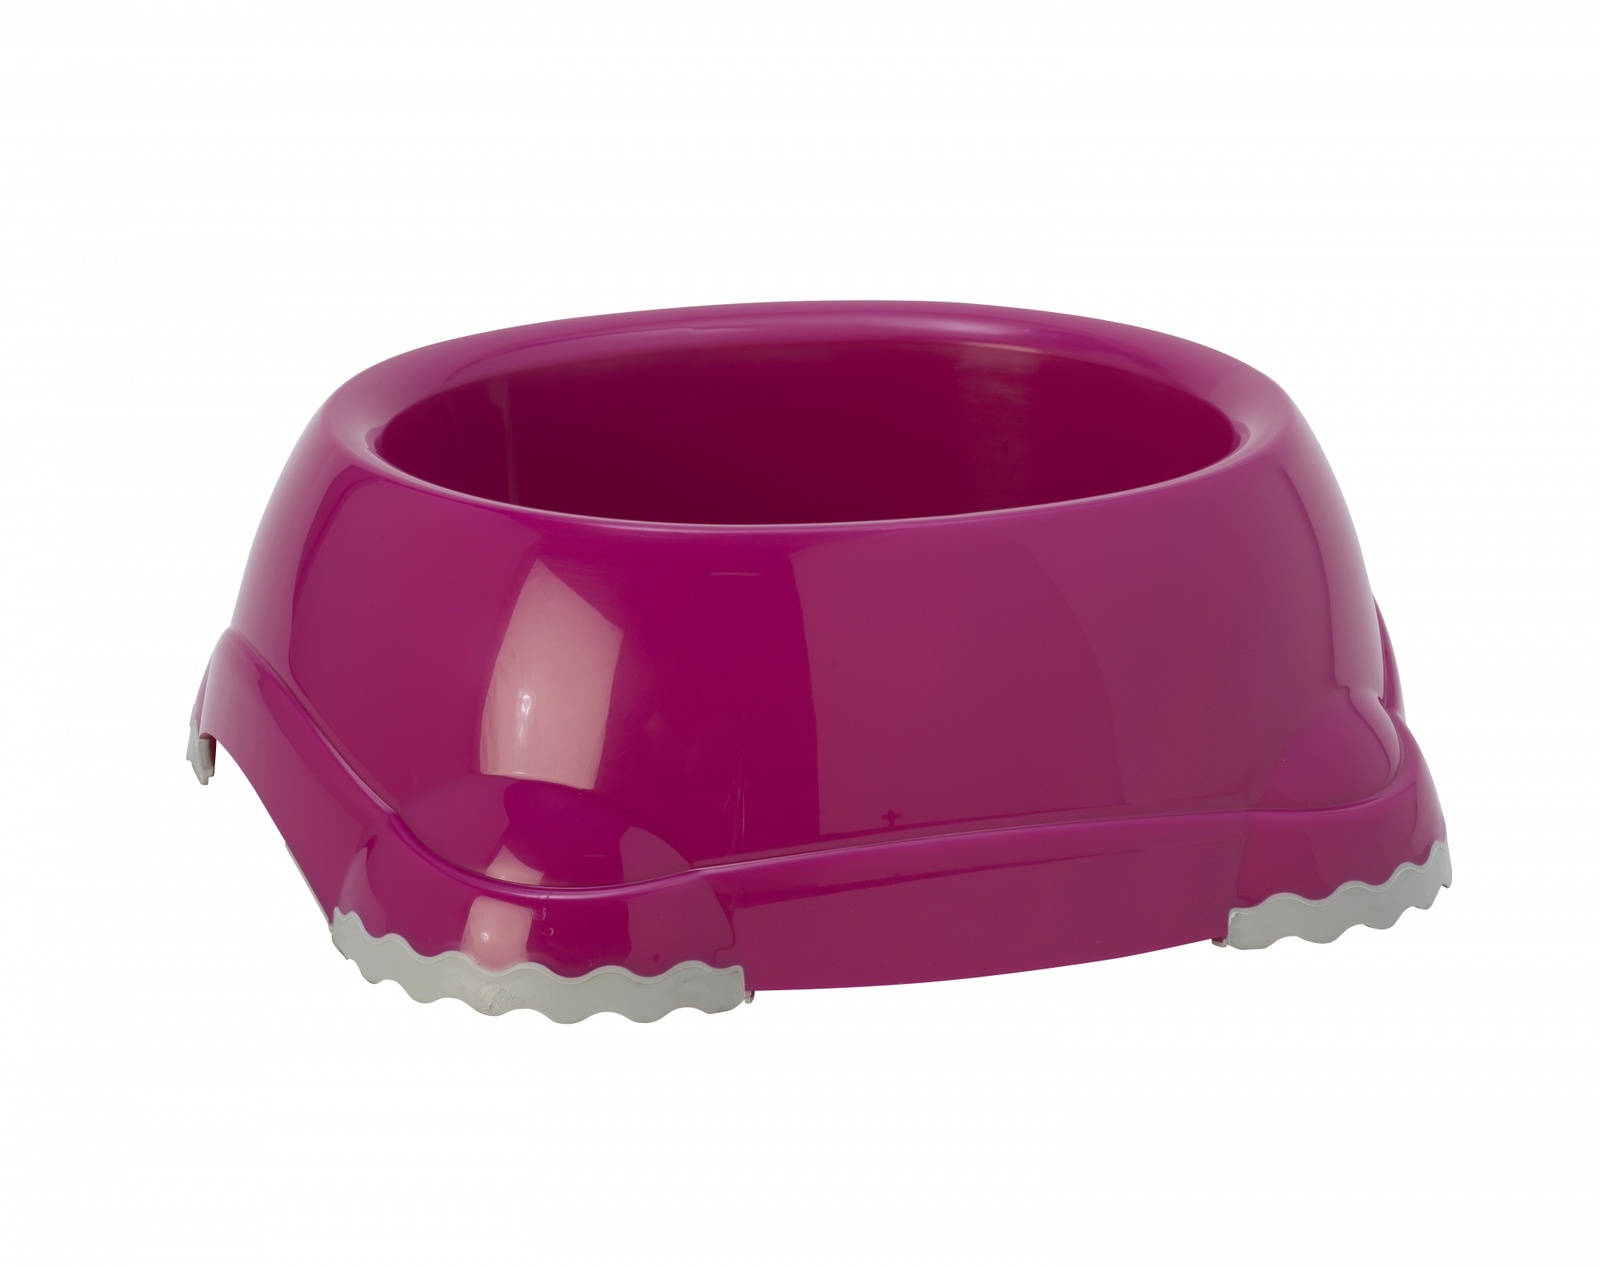 Moderna Moderna миска нескользящая Smarty, ярко-розовый (315 мл) миска нескользящая moderna smarty bowl пластиковая бордовая 1 25 л 1 шт